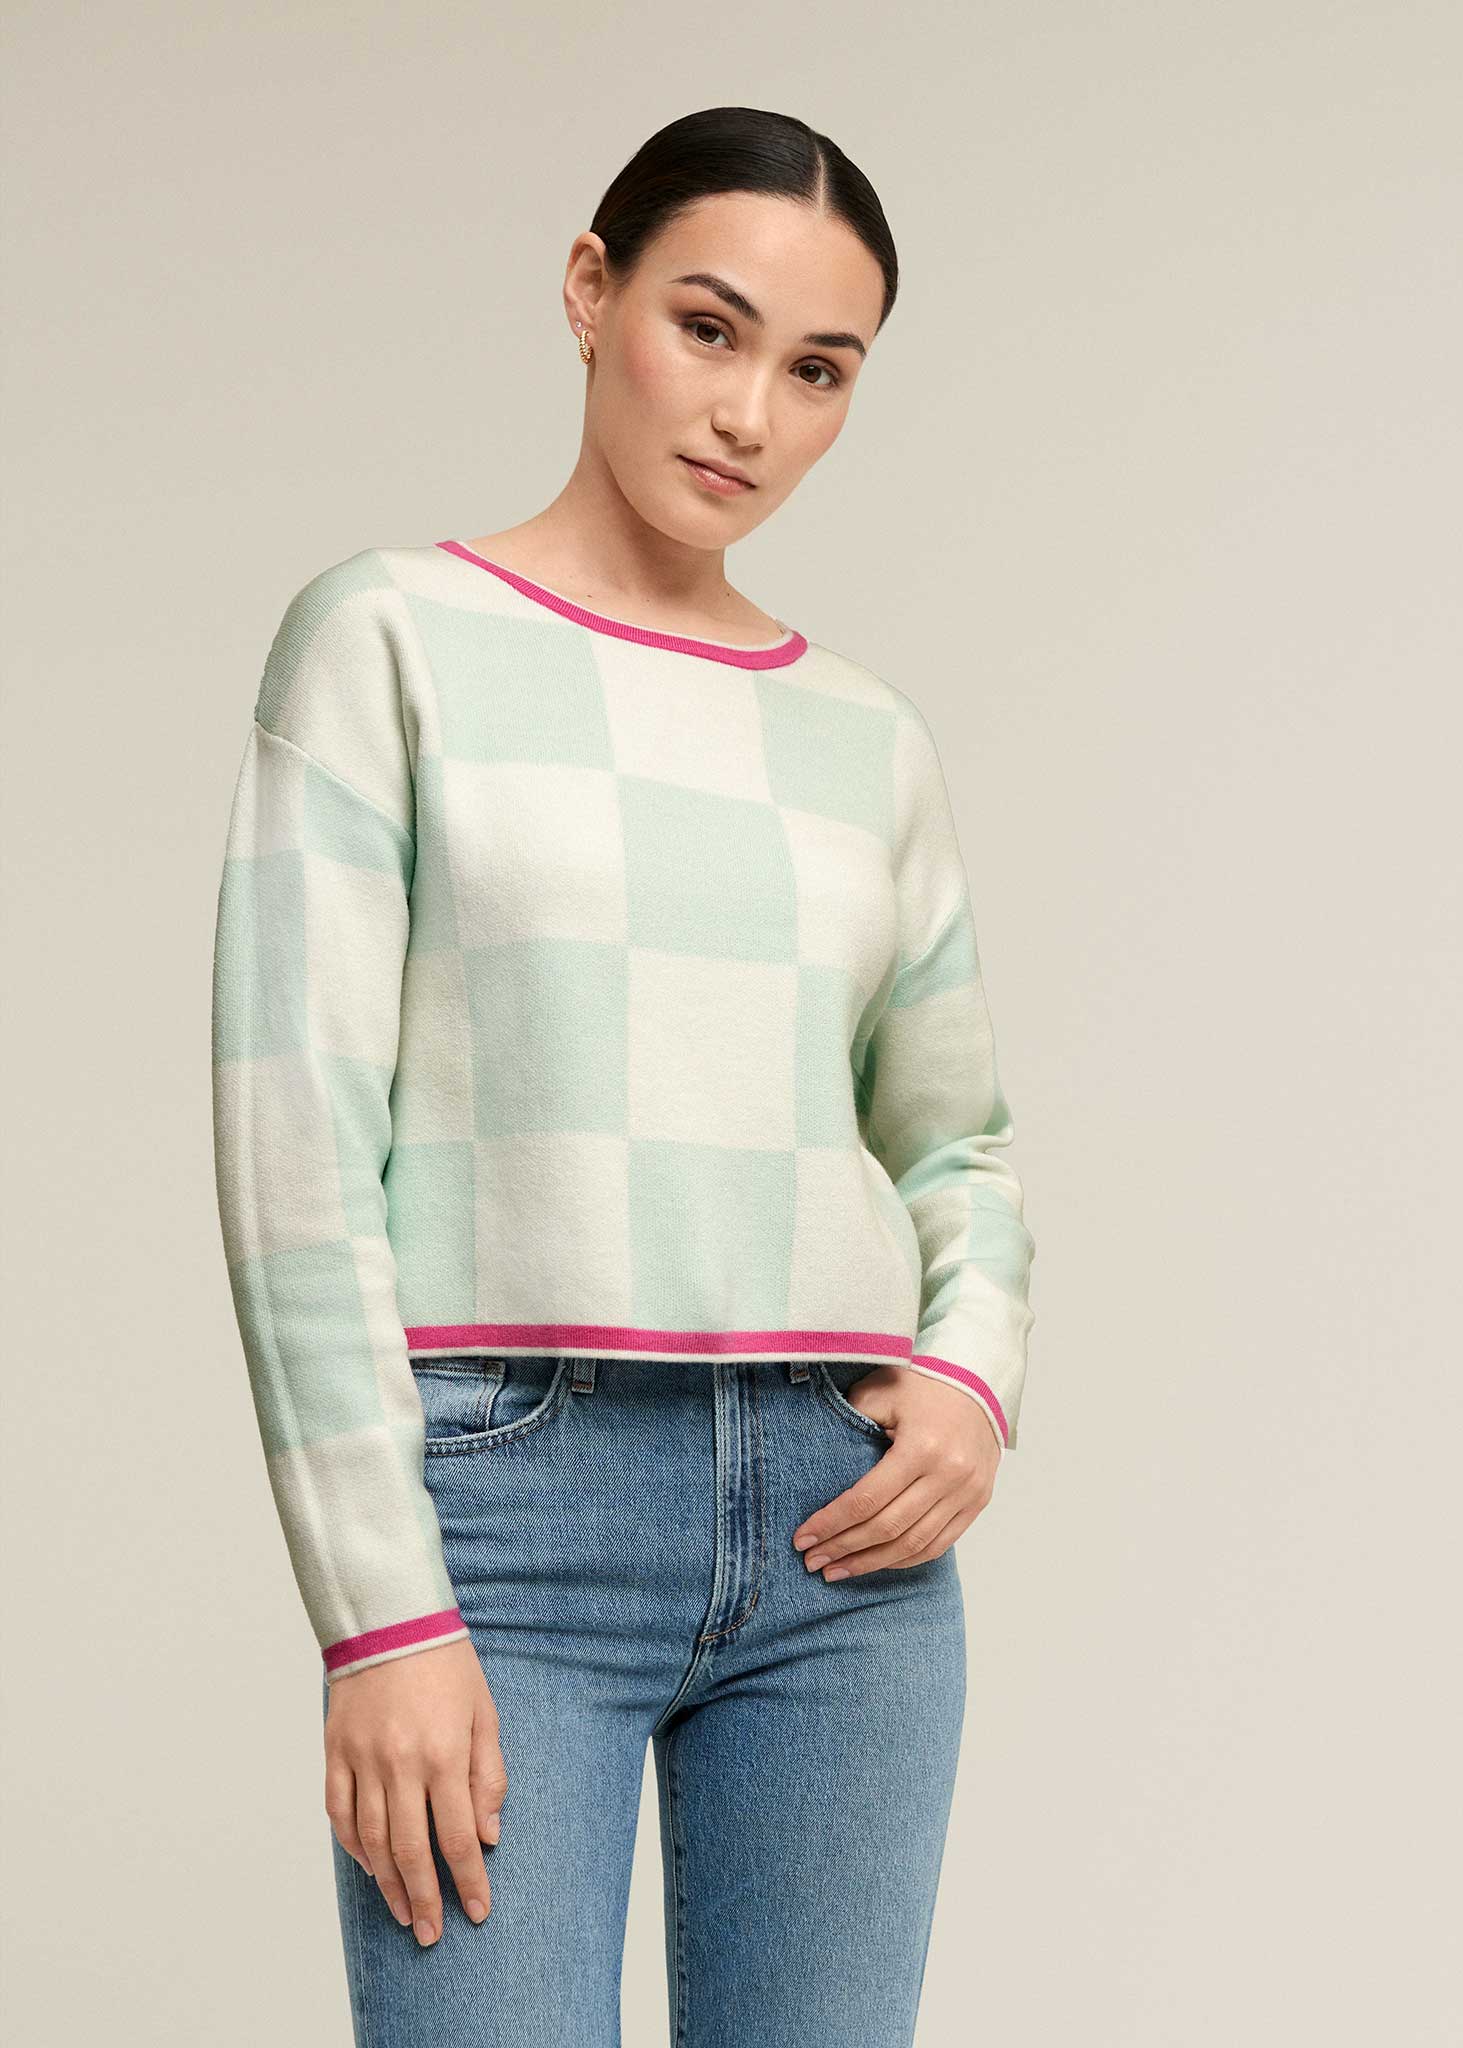 Checker Board Sweater